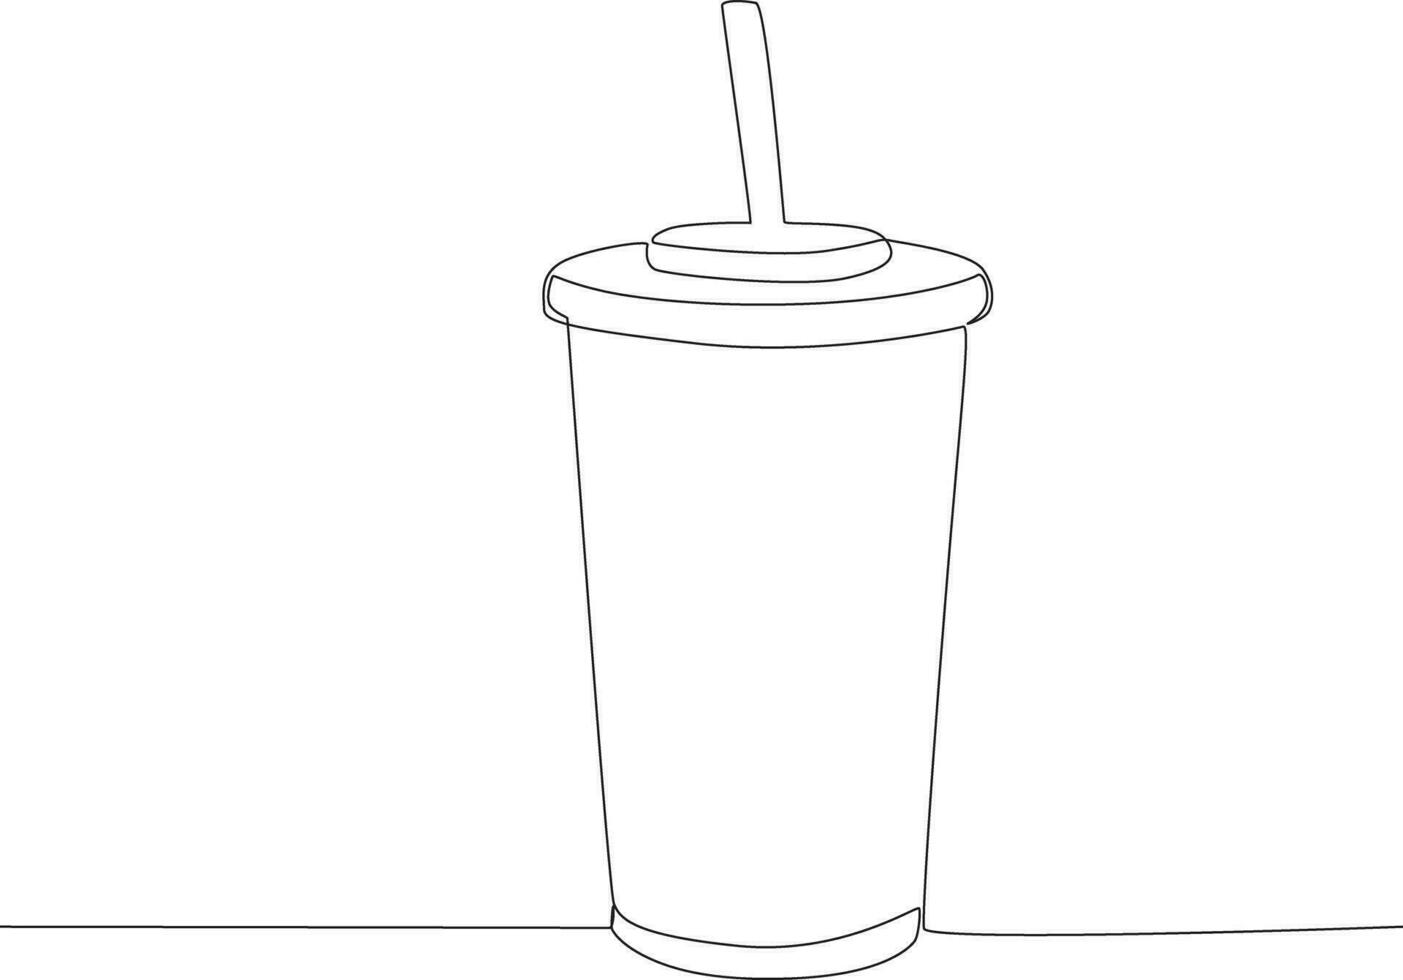 Single kontinuierlich Linie Zeichnung Kaffee oder Tee Tassen. global Tag Elternteil Konzept vektor